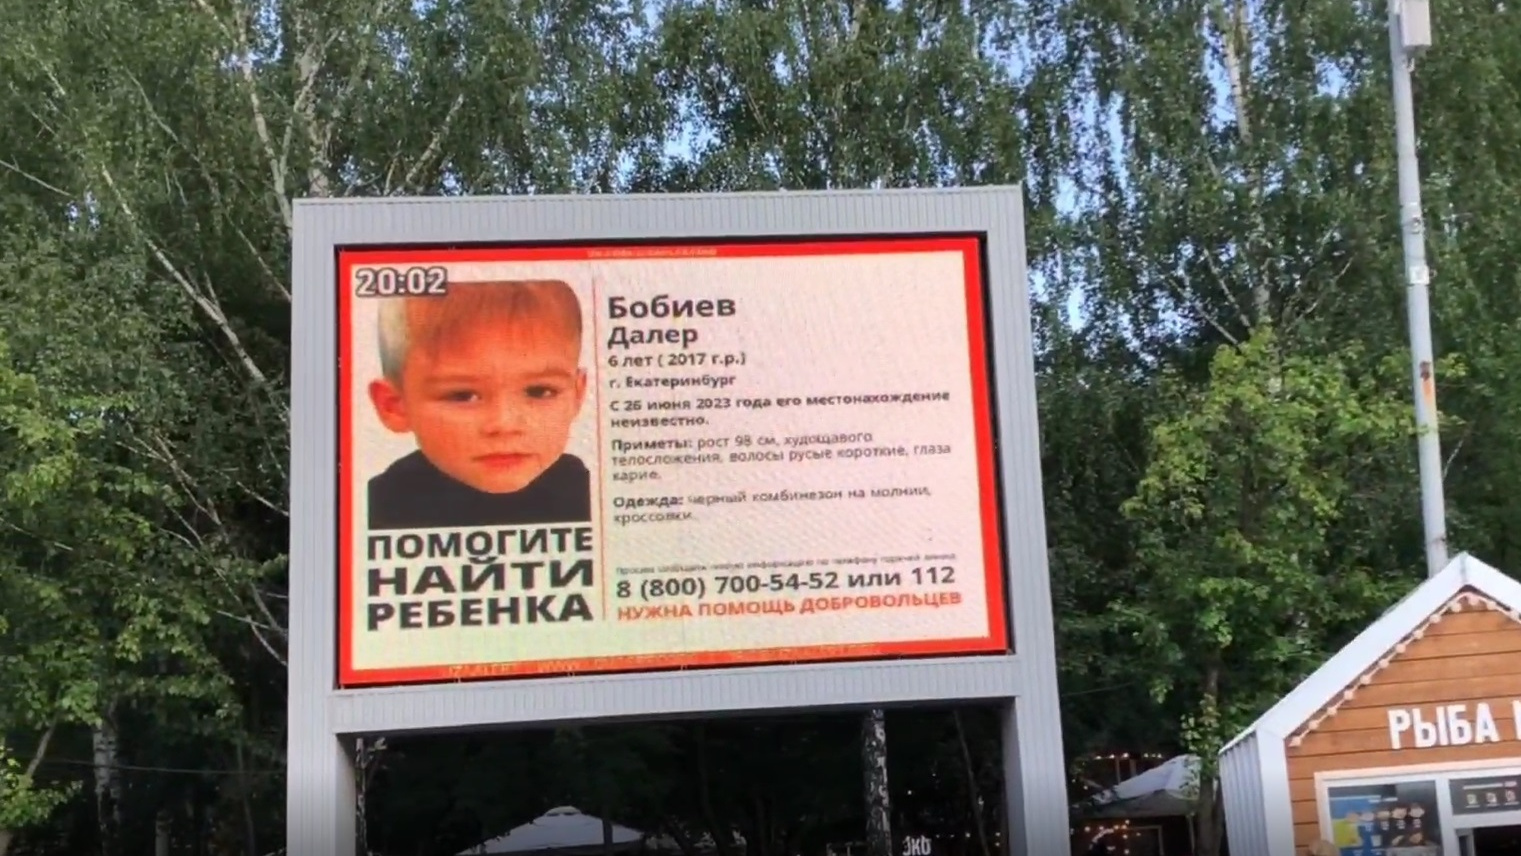 Для поисков остро не хватает людей: онлайн о пропаже ребенка в Екатеринбурге